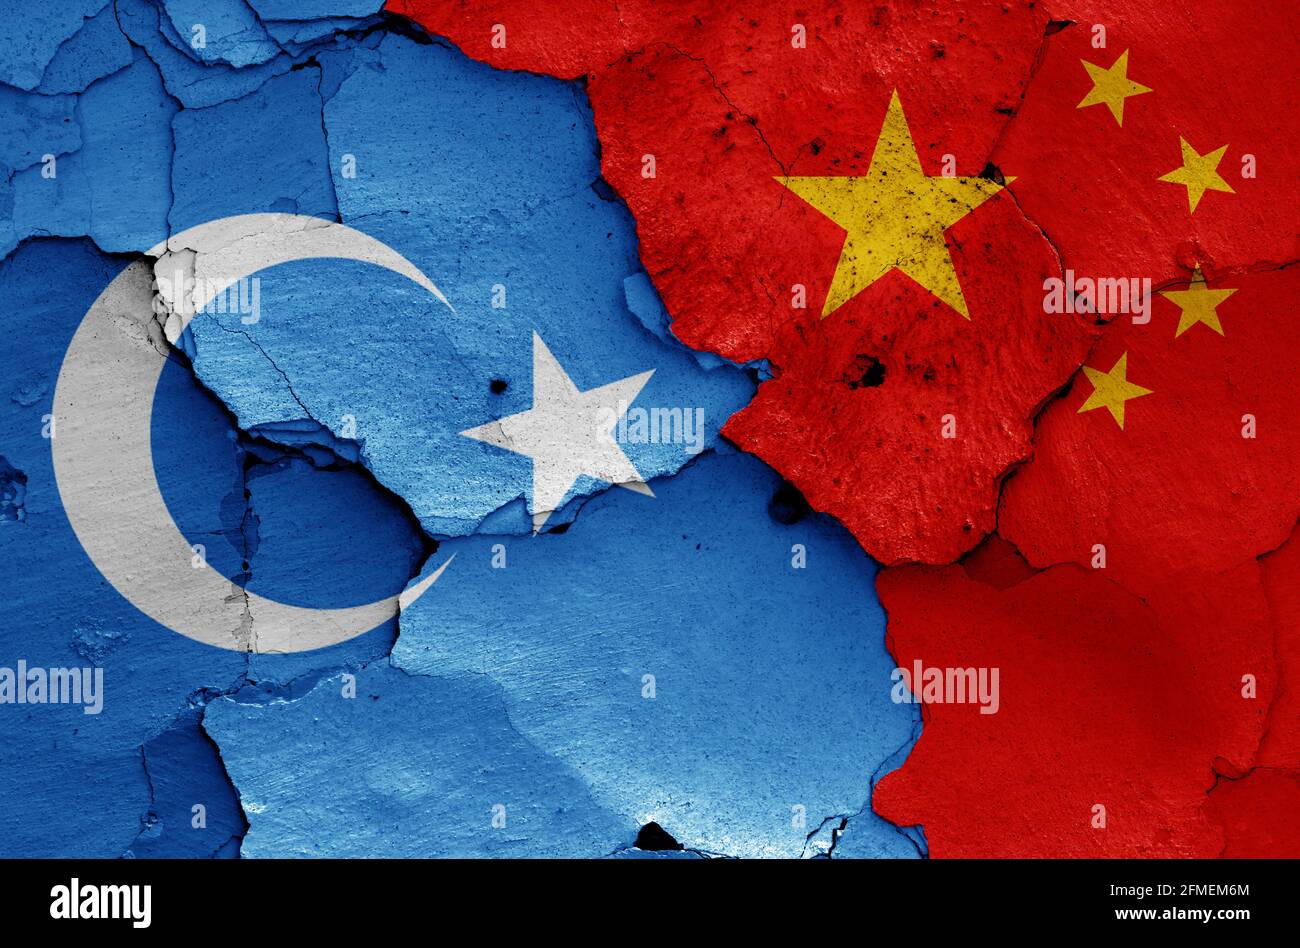 Drapeaux du Turkestan oriental et de la Chine peints sur un mur fissuré Banque D'Images